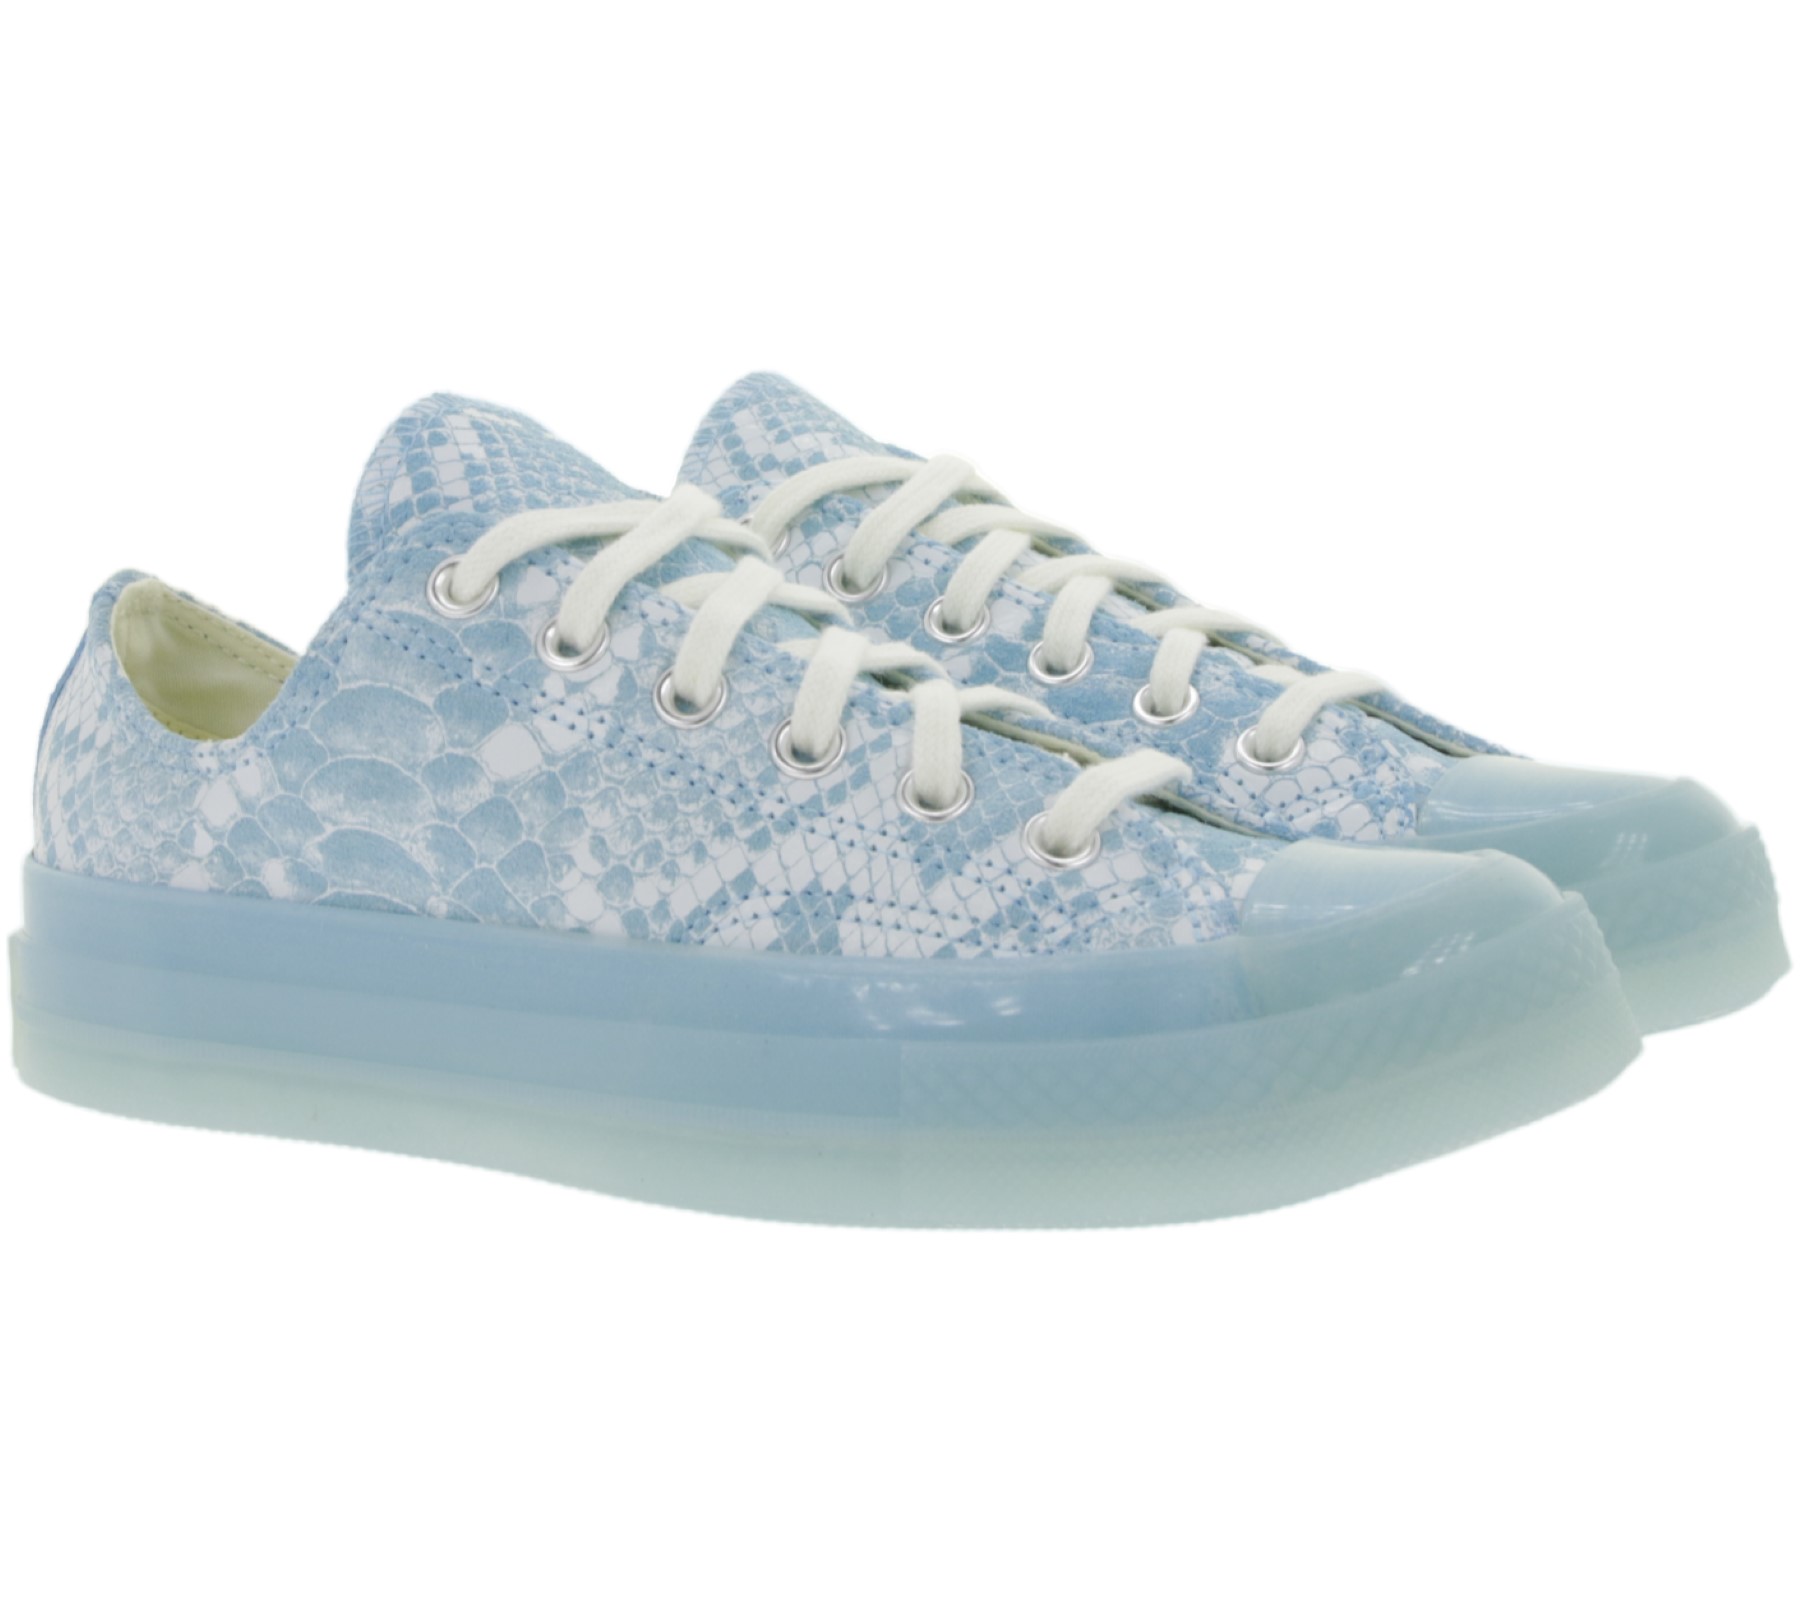 Converse x Golf Wang Low Top Schuhe coole Echtleder-Sneaker in Schlangenleder-Optik Chuck 70 Ox Blau/Weiß von Converse